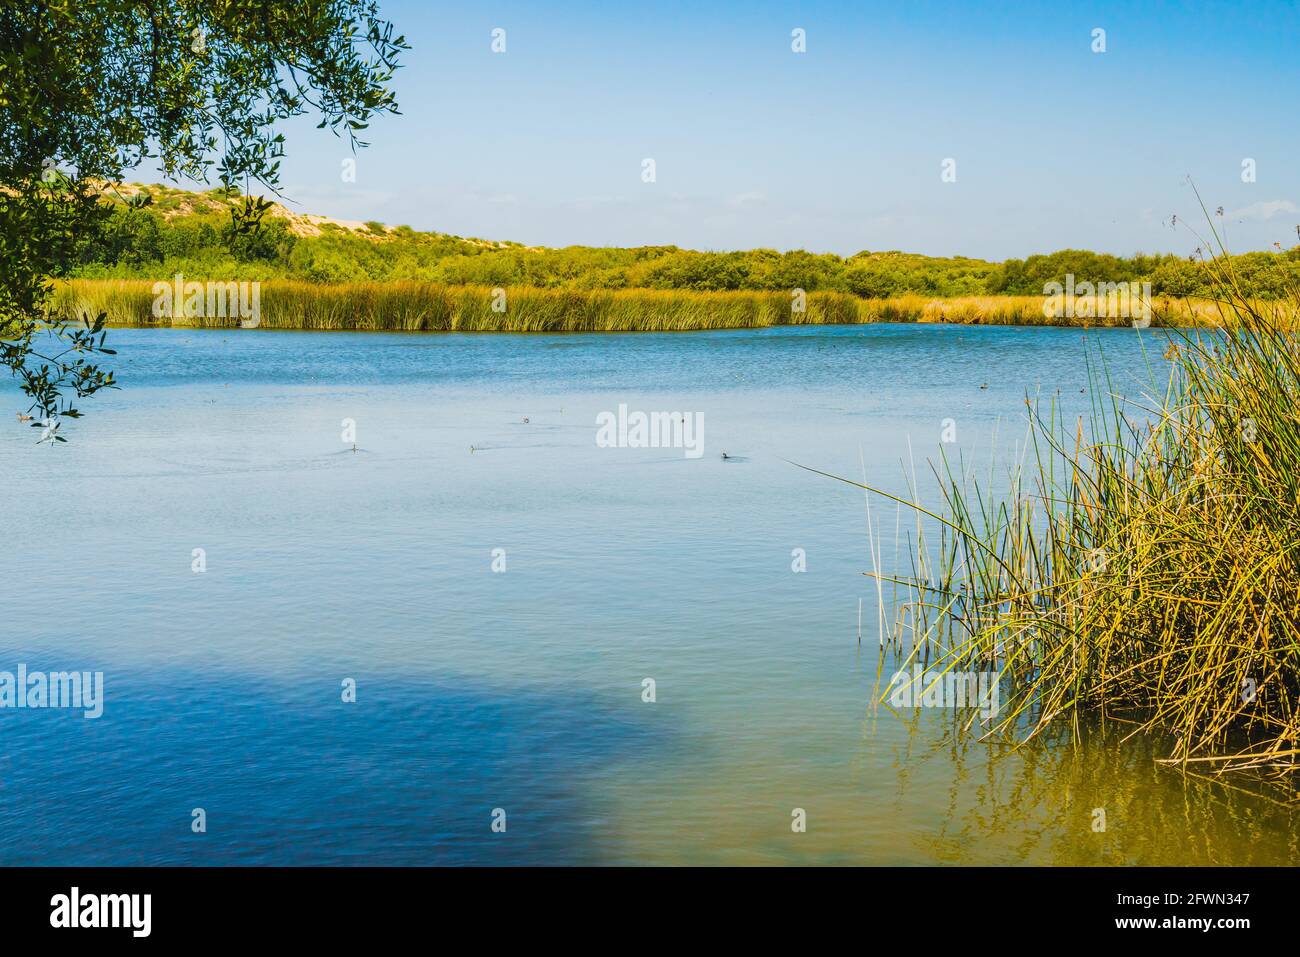 Paesaggio tranquillo con lago blu, ruscelli e piante paludose ai margini del lago, e anatre Foto Stock